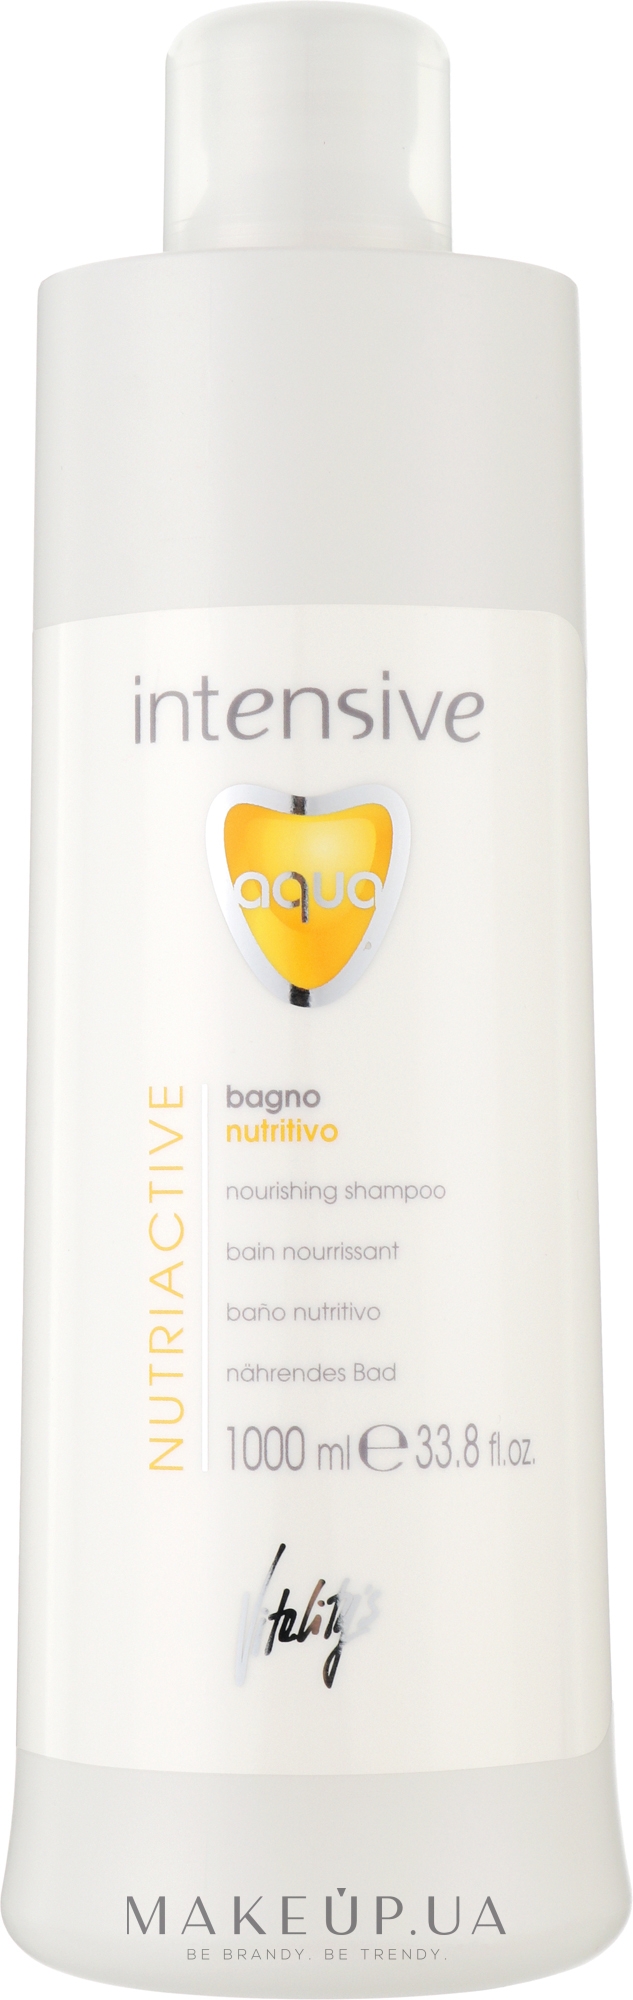 Живильний шампунь для сухого волосся - vitality's Intensive Aqua Nourishing Shampoo — фото 1000ml